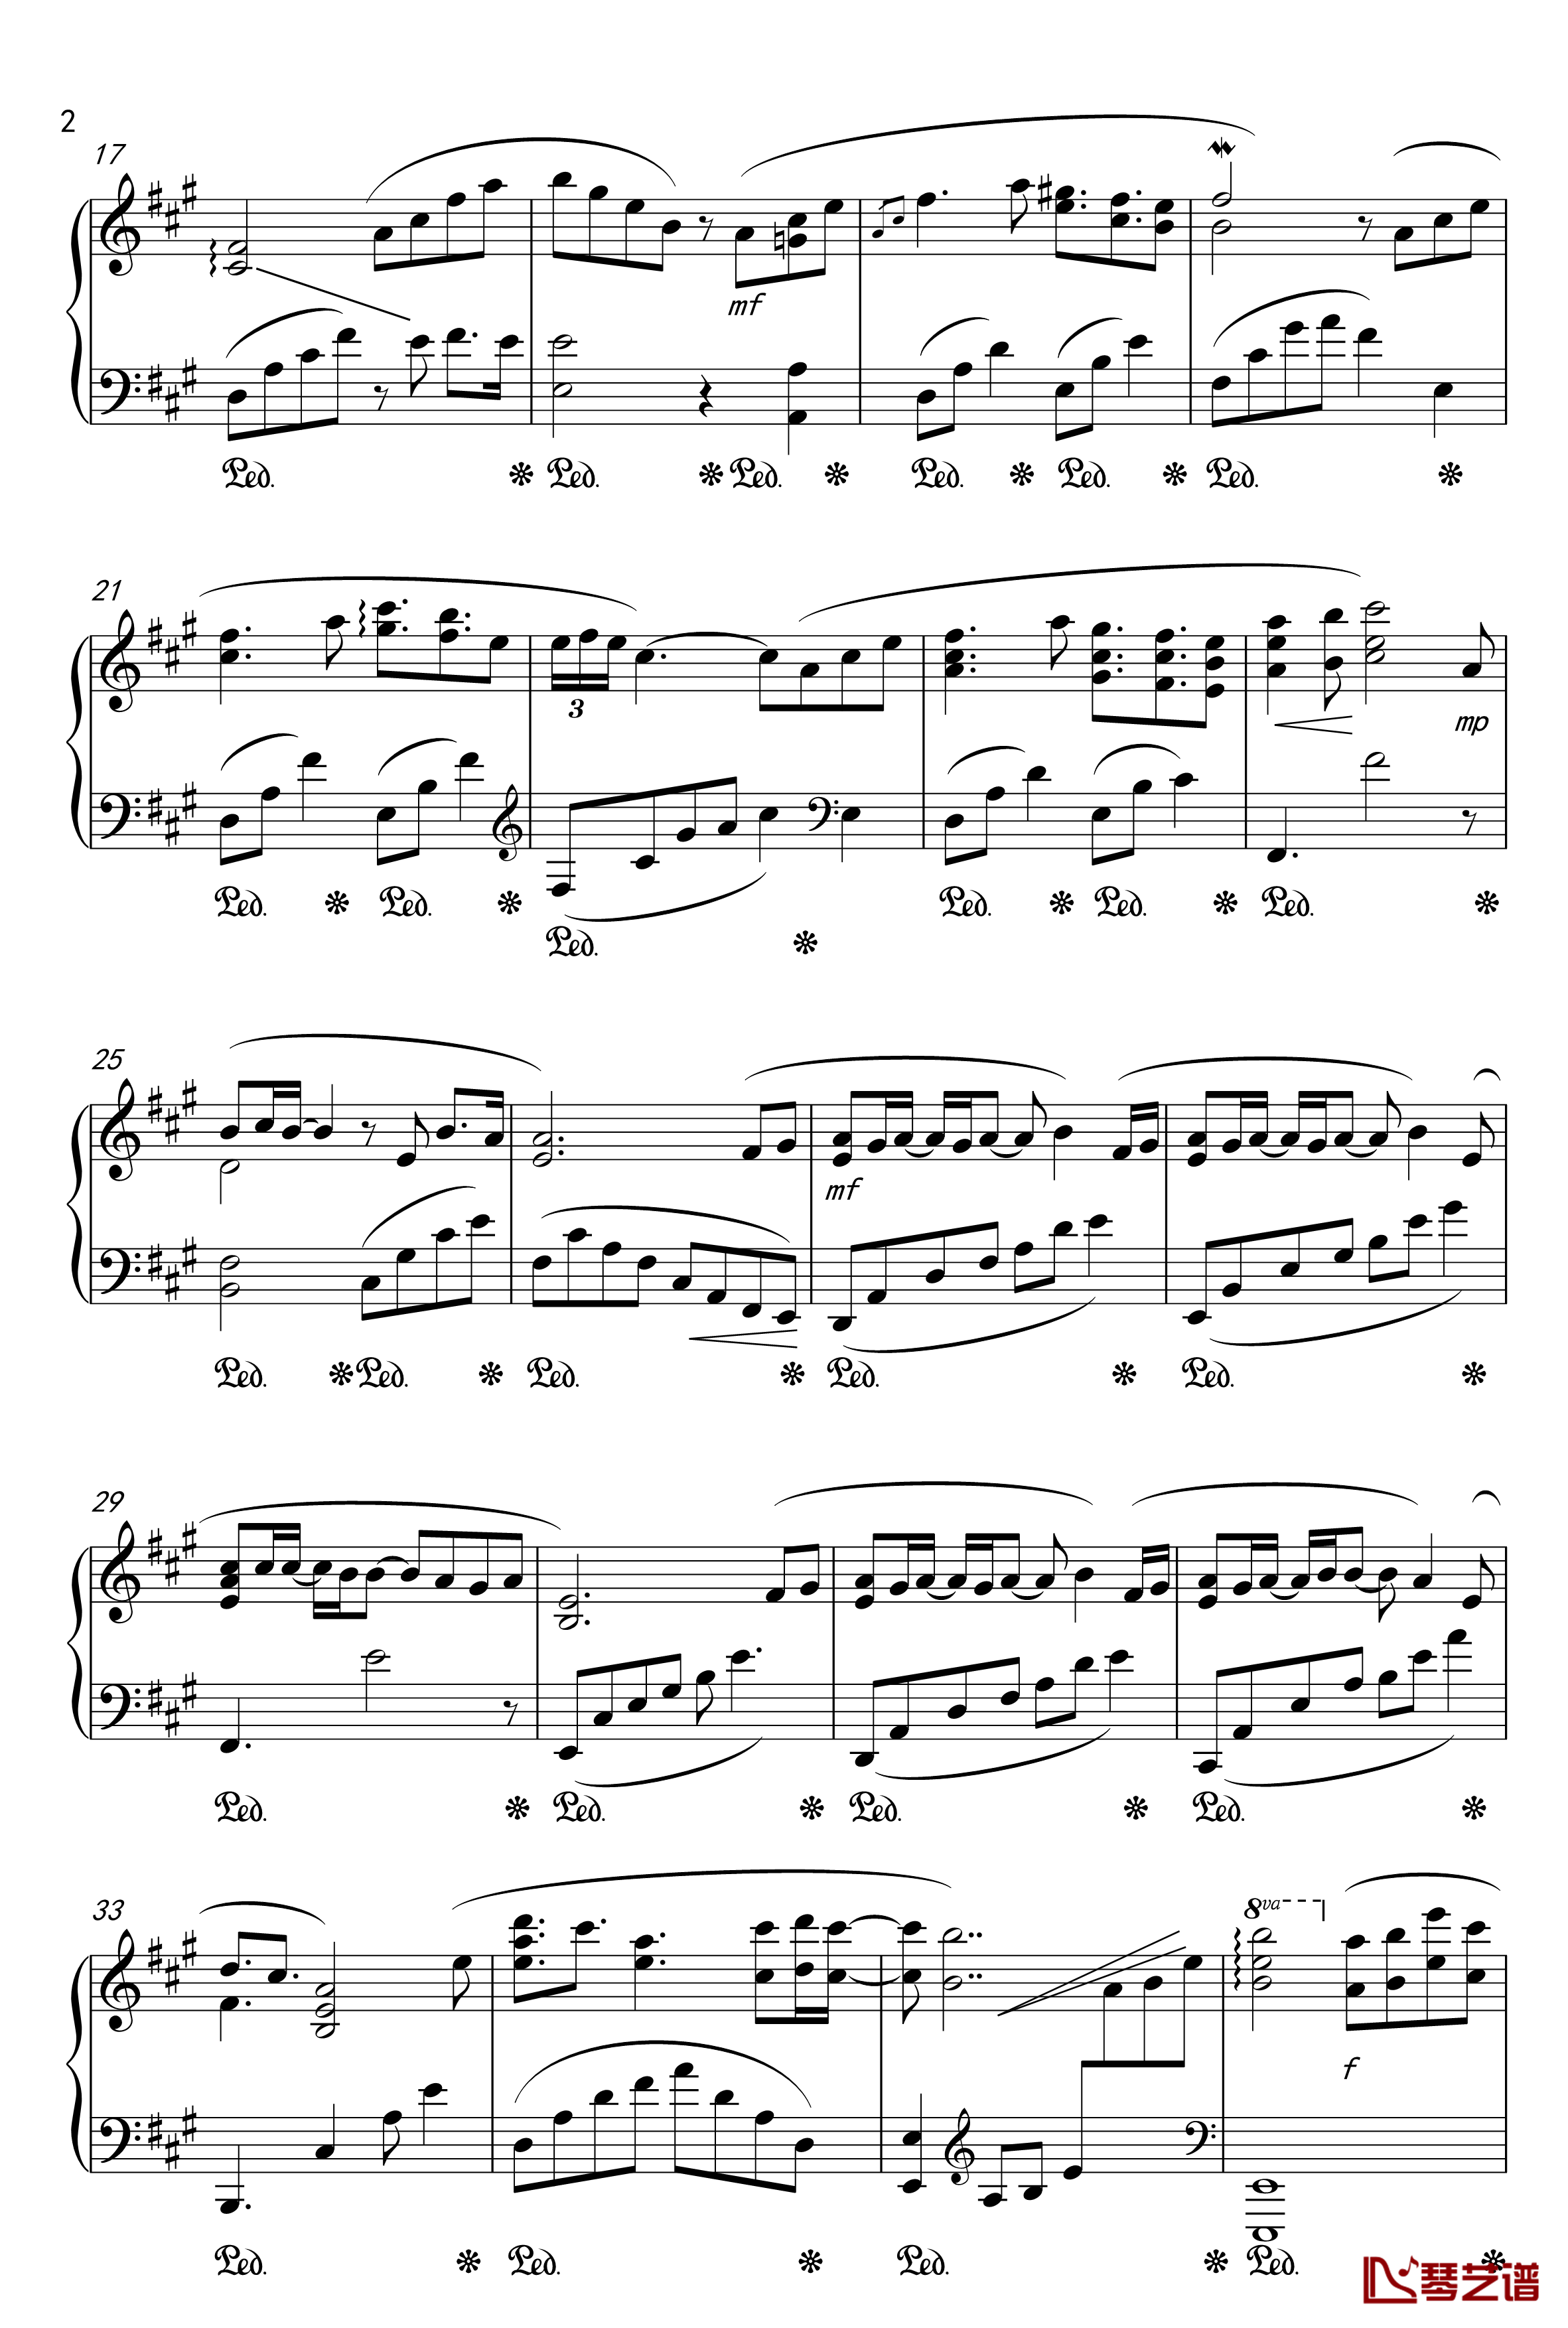 月夜に舞う恋の花-Piano Instrumental-钢琴谱-千の刃涛